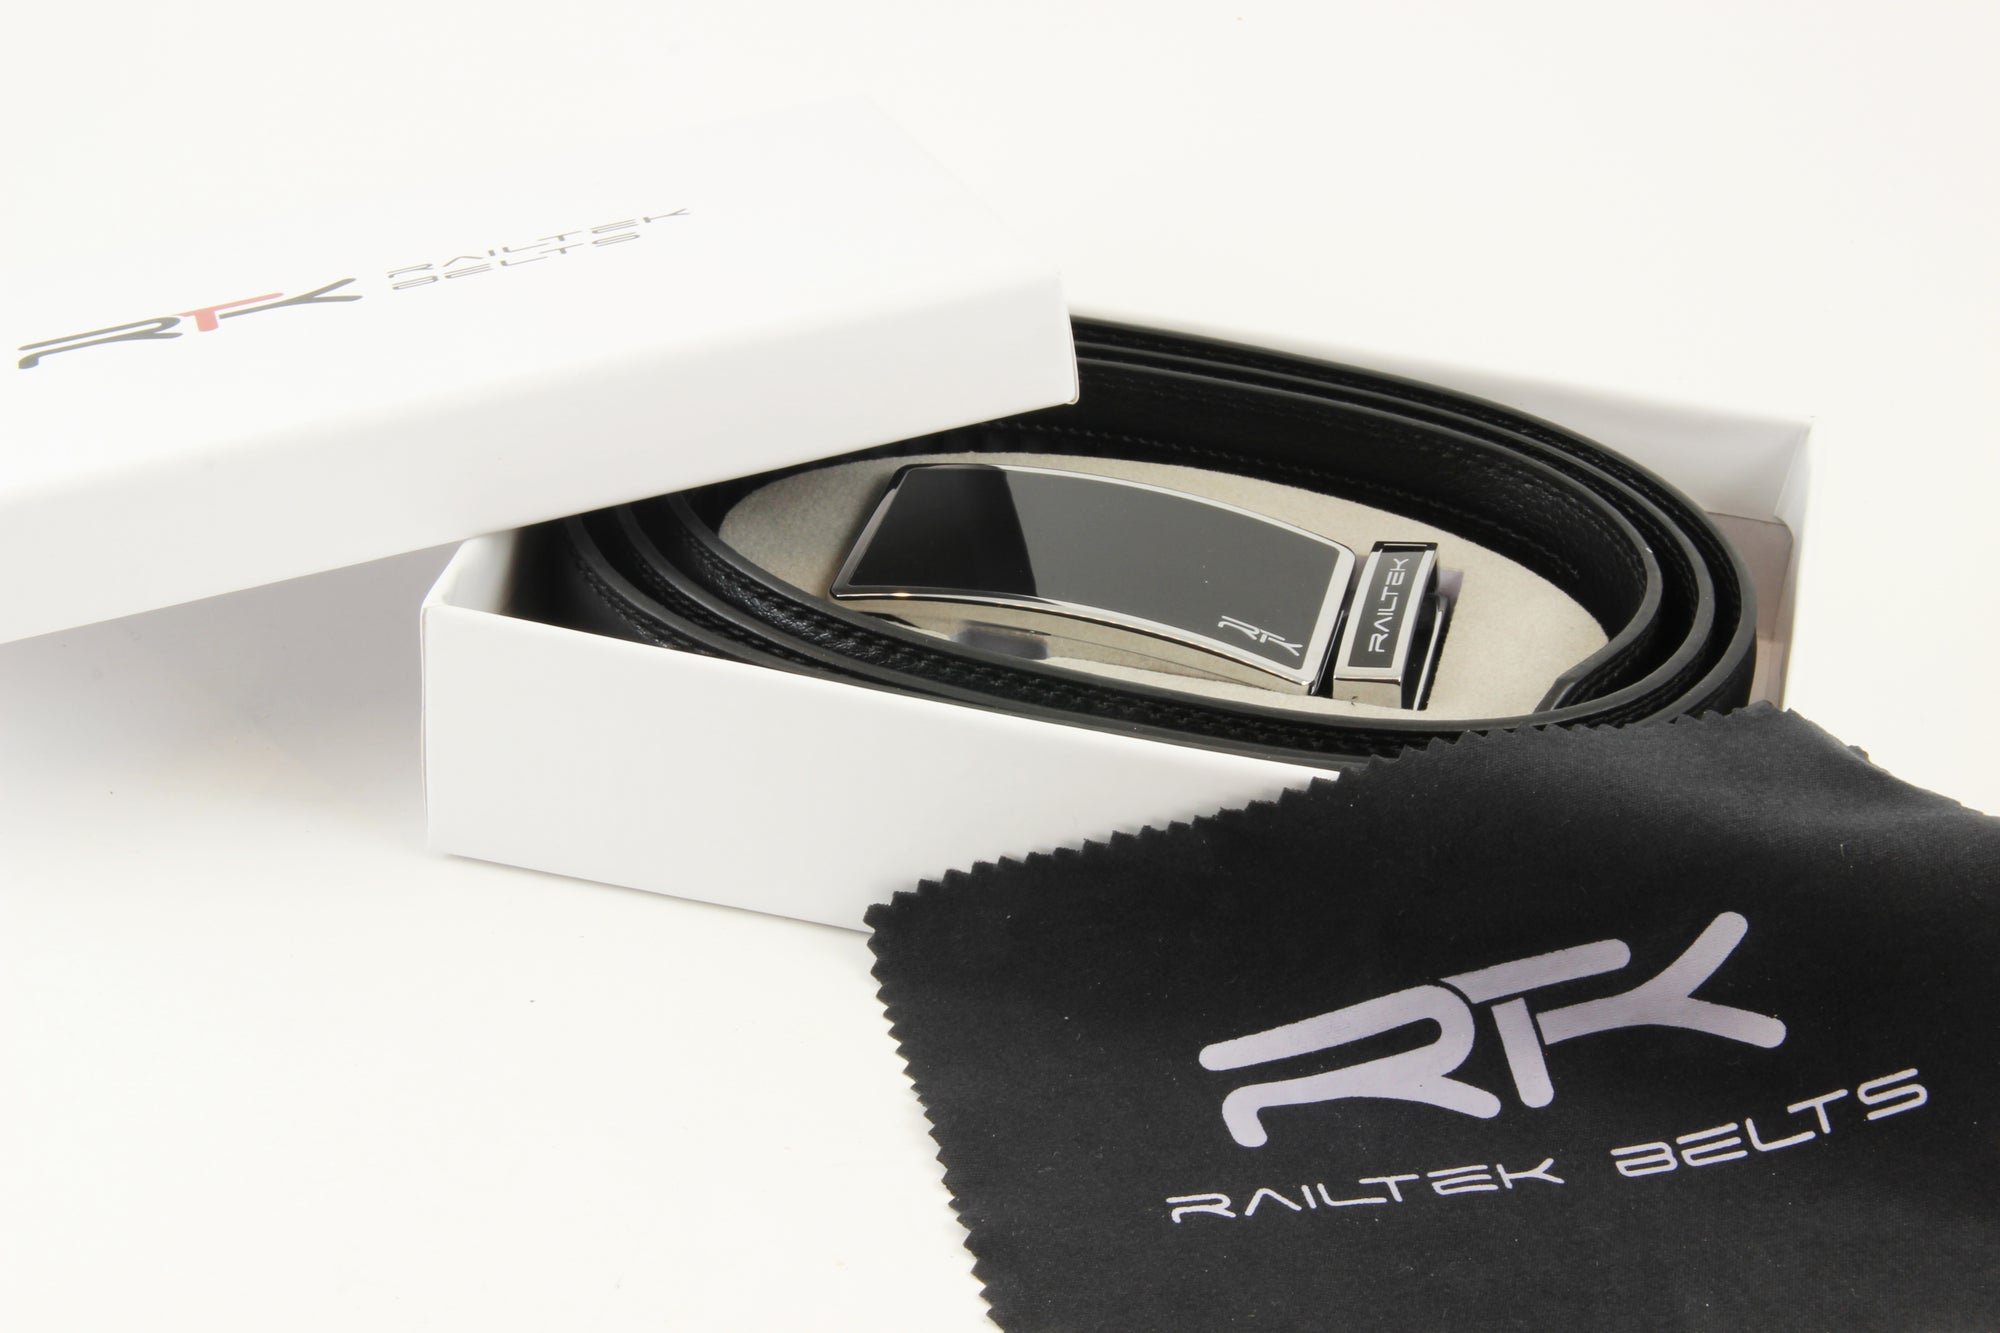 Railtek Ratchet Belts